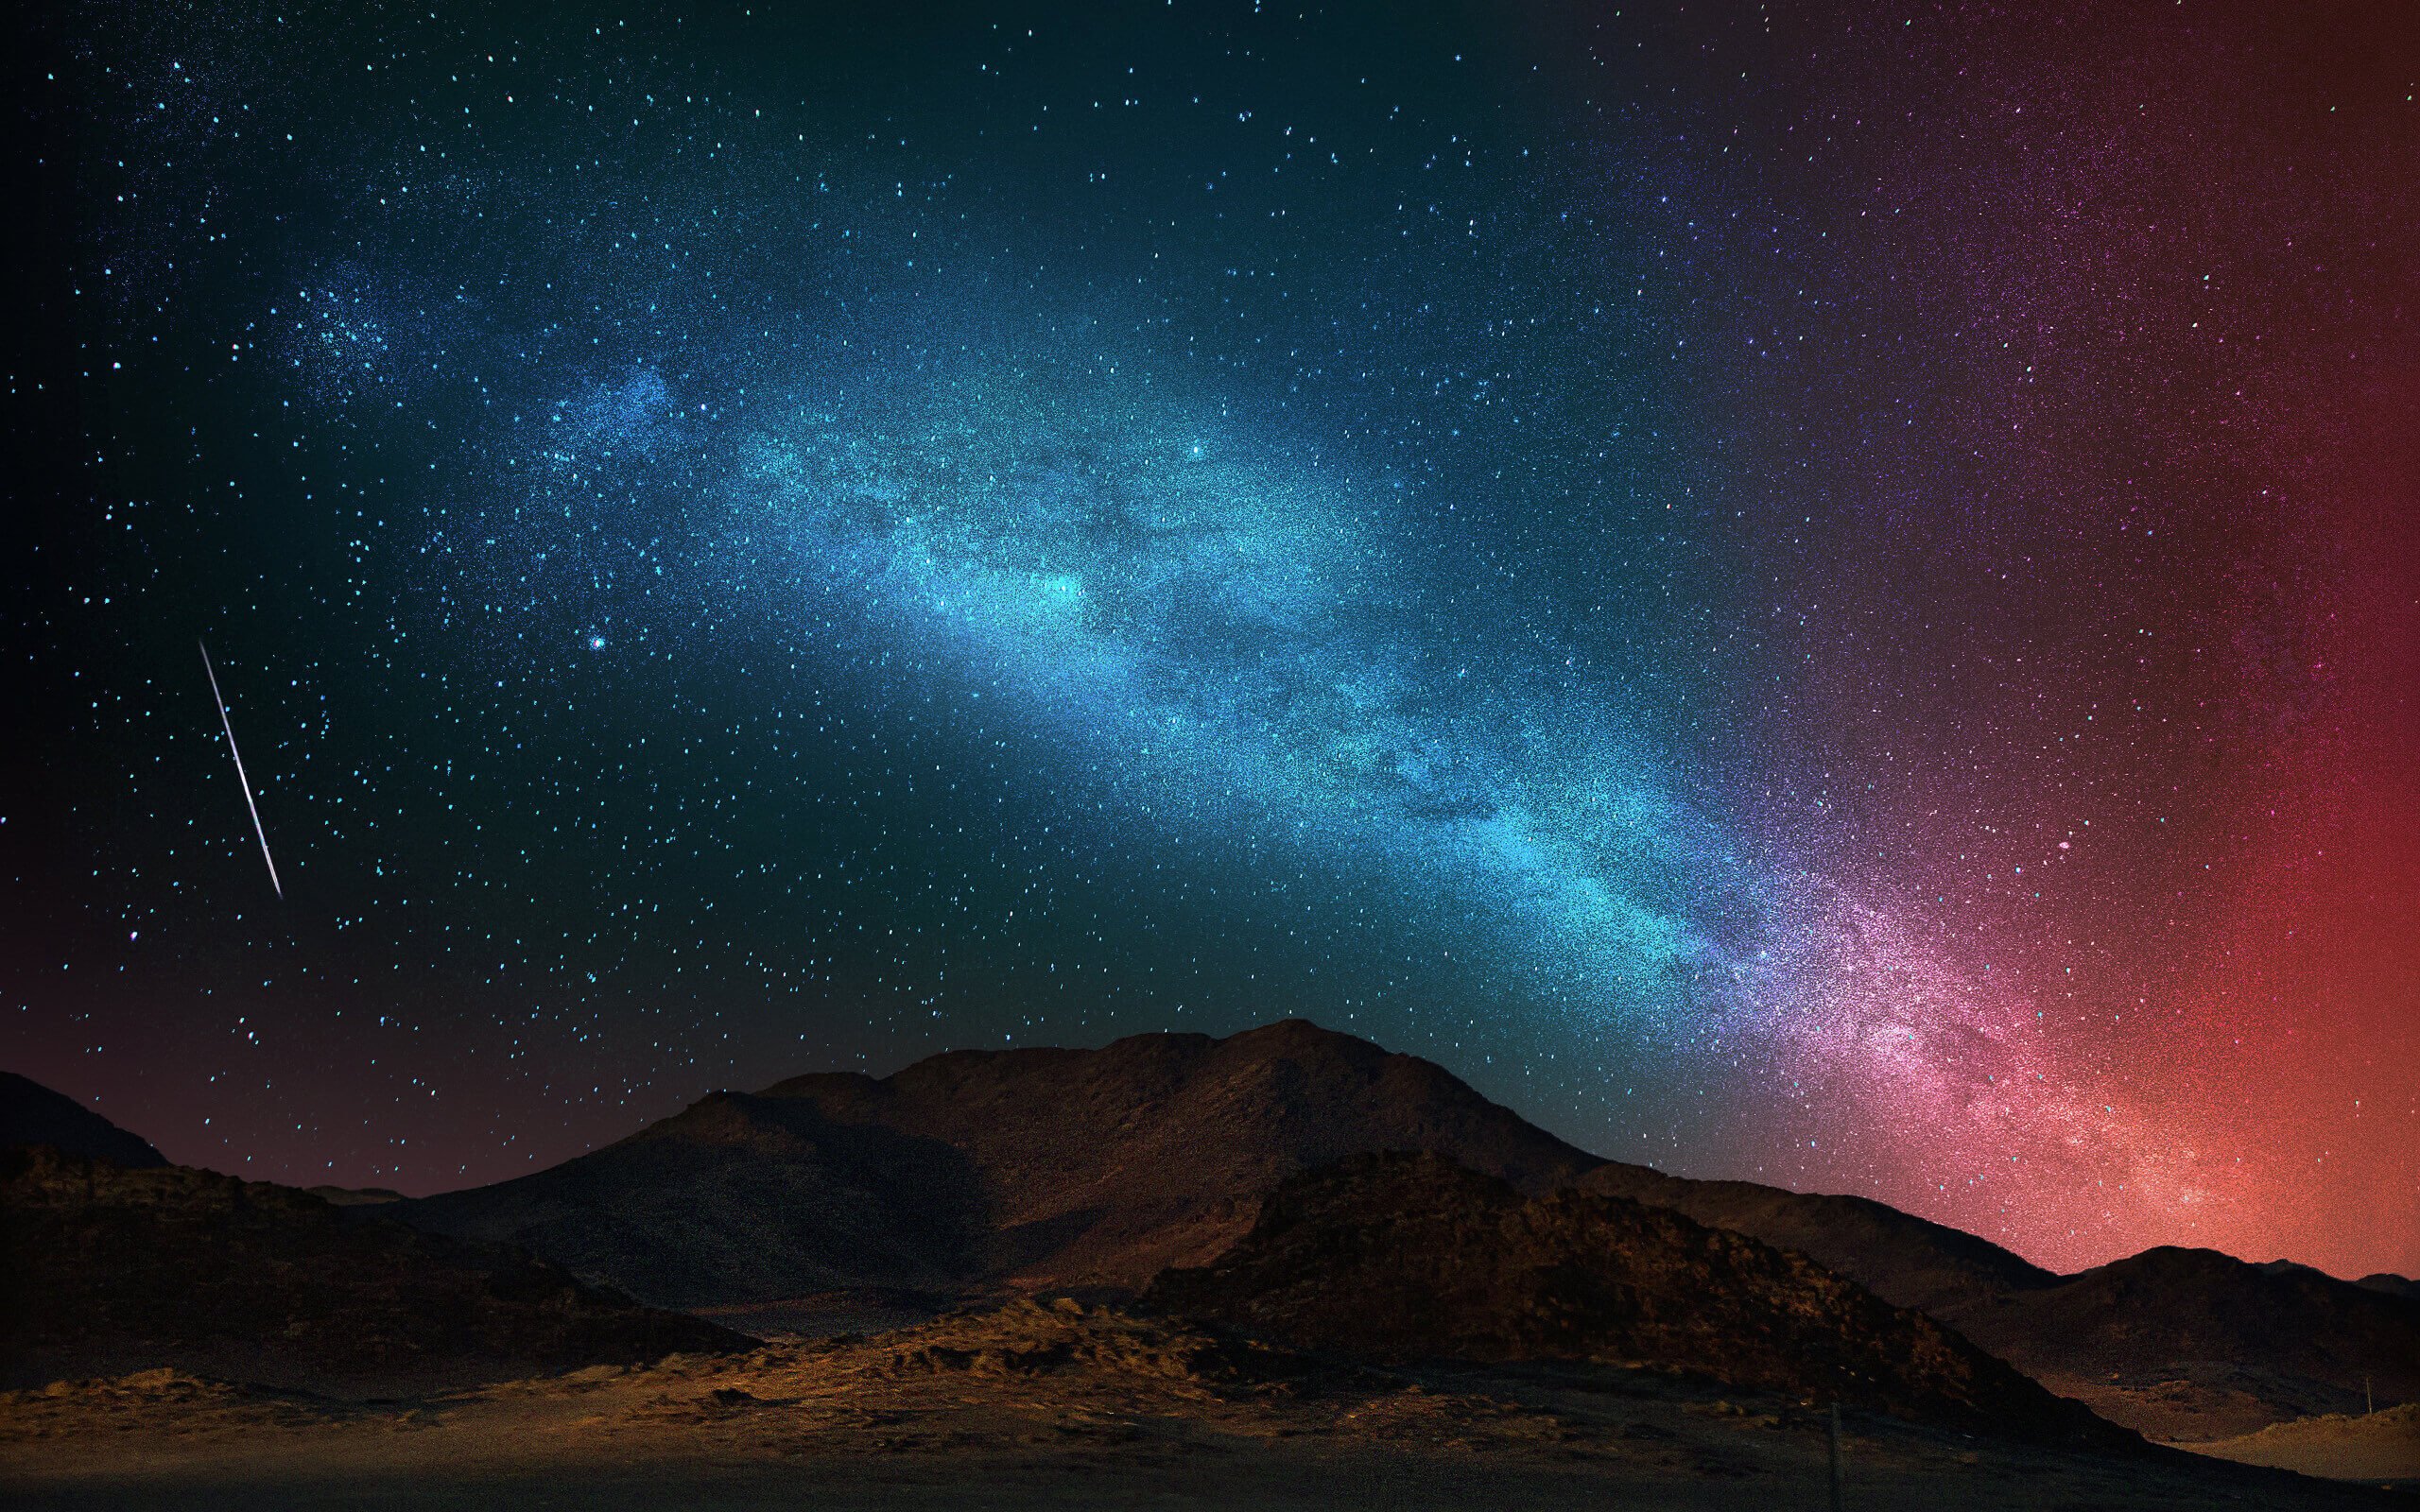 Starry Night Over The Desert Wallpaper for Desktop 2560x1600